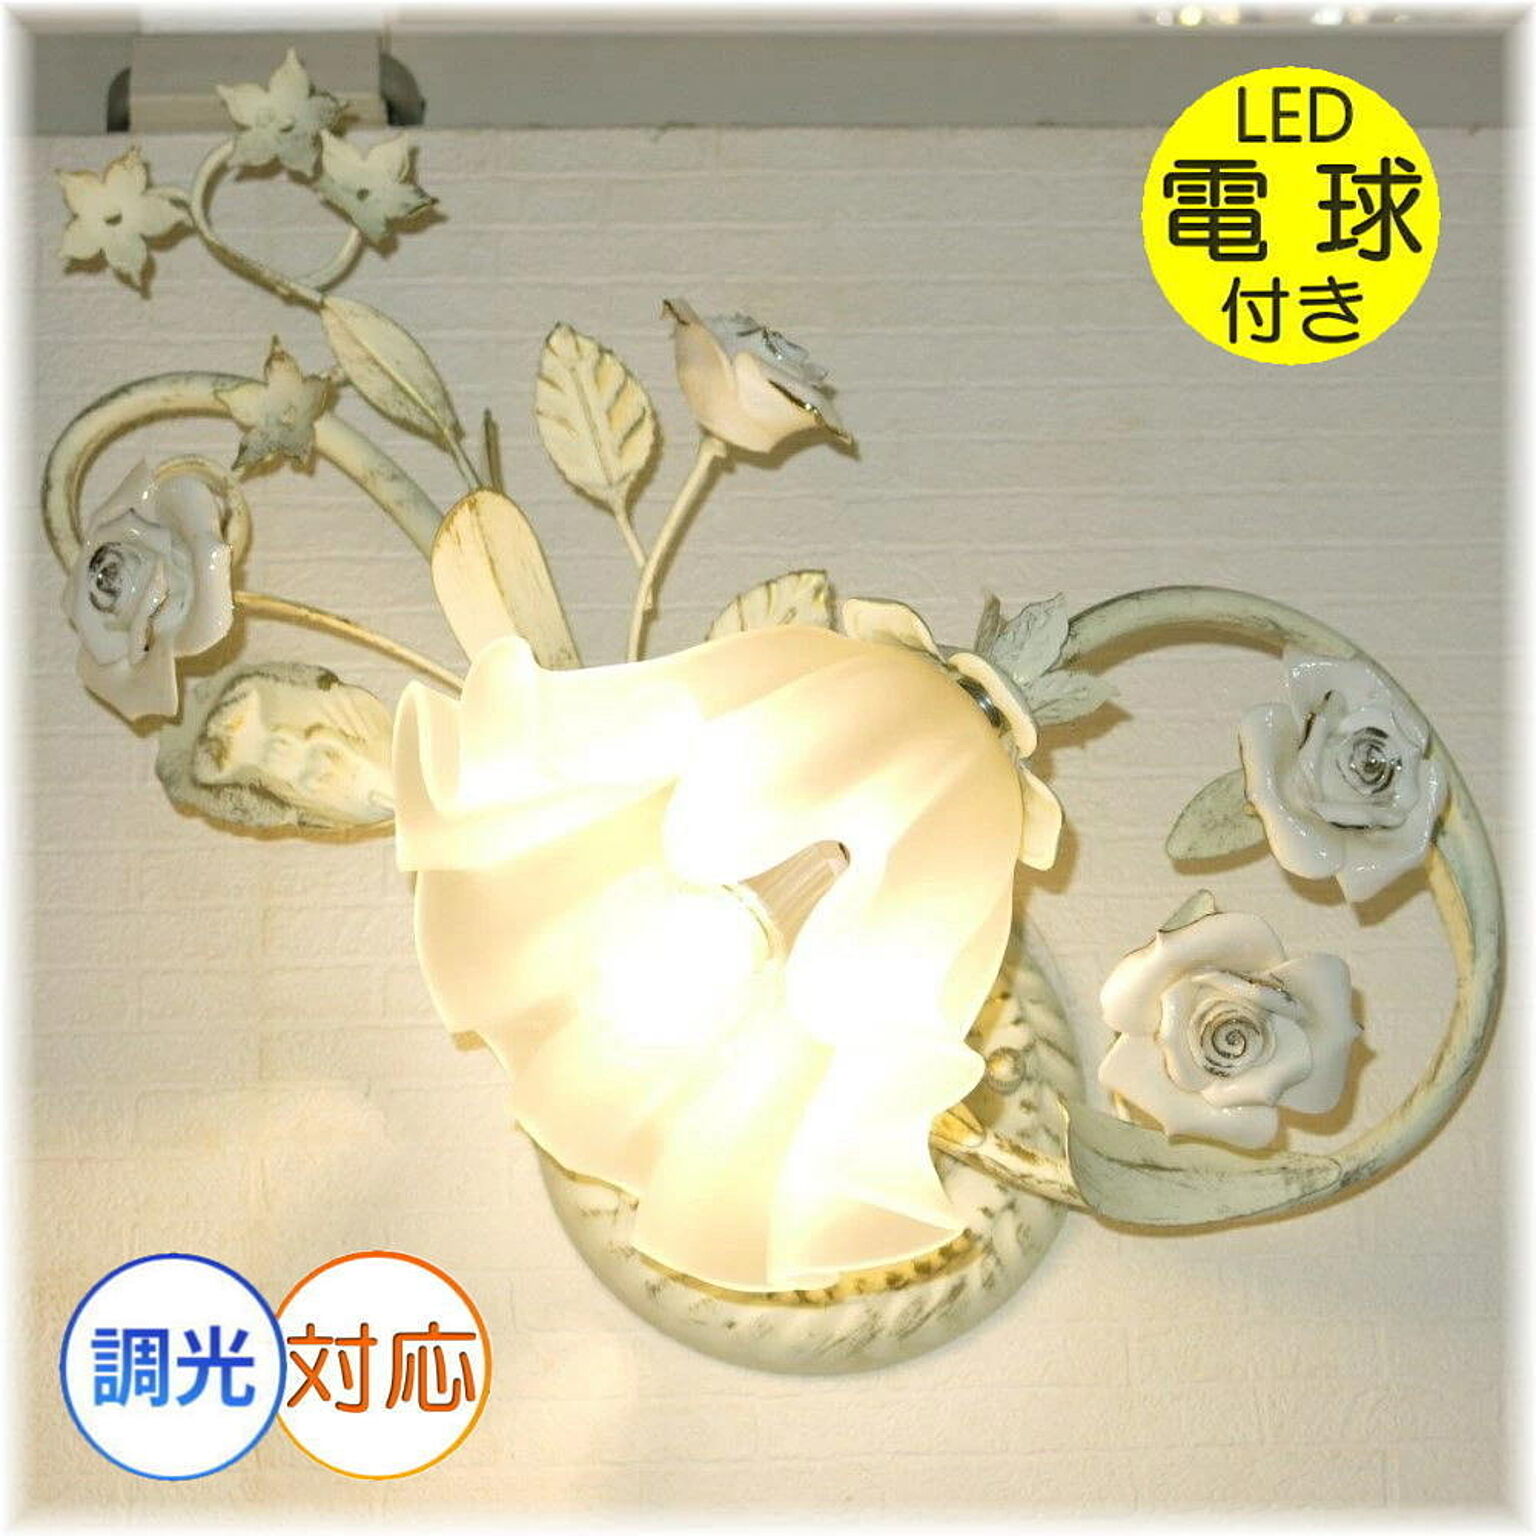 アンティーク・ガレ 薔薇モチーフ LED ブラケット 壁掛け照明器具 天井 左用 暖色